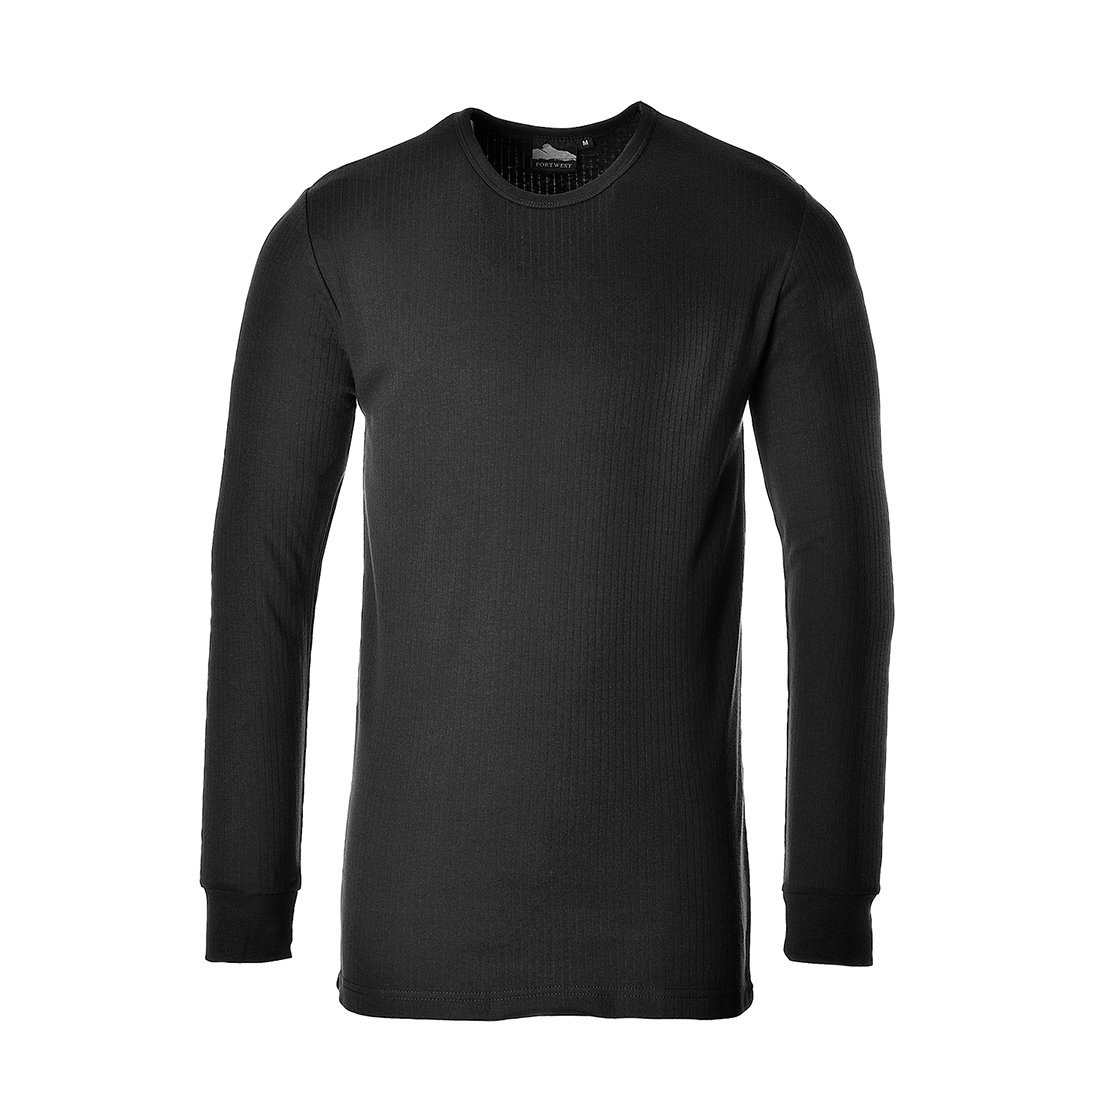 Beispielbild des Langärmeligen Thermo-Shirts B123 in Schwarz mit hinterlegtem Link zum Artikel.